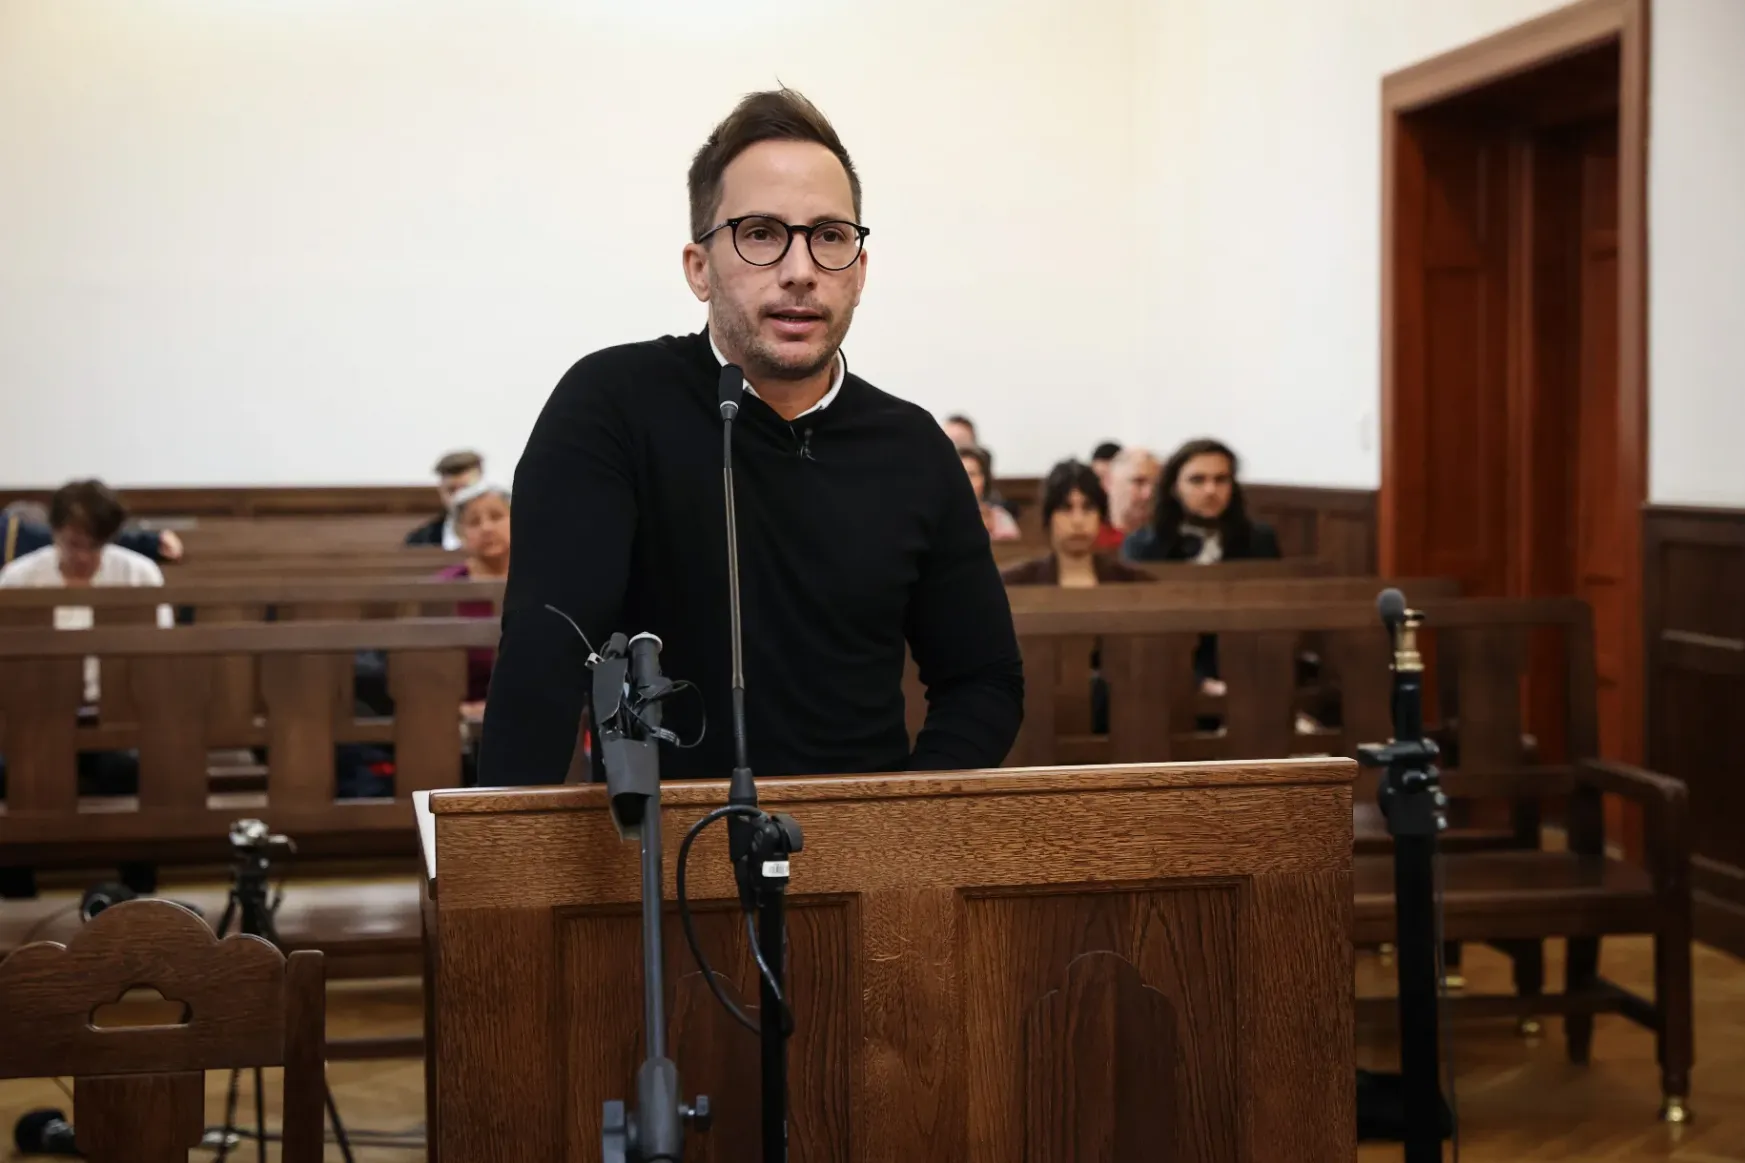 Megrovást kapott a bíróságtól Pető Attila, aki bocsánatkérést várt azért, mert gyerekként egy pap molesztálta